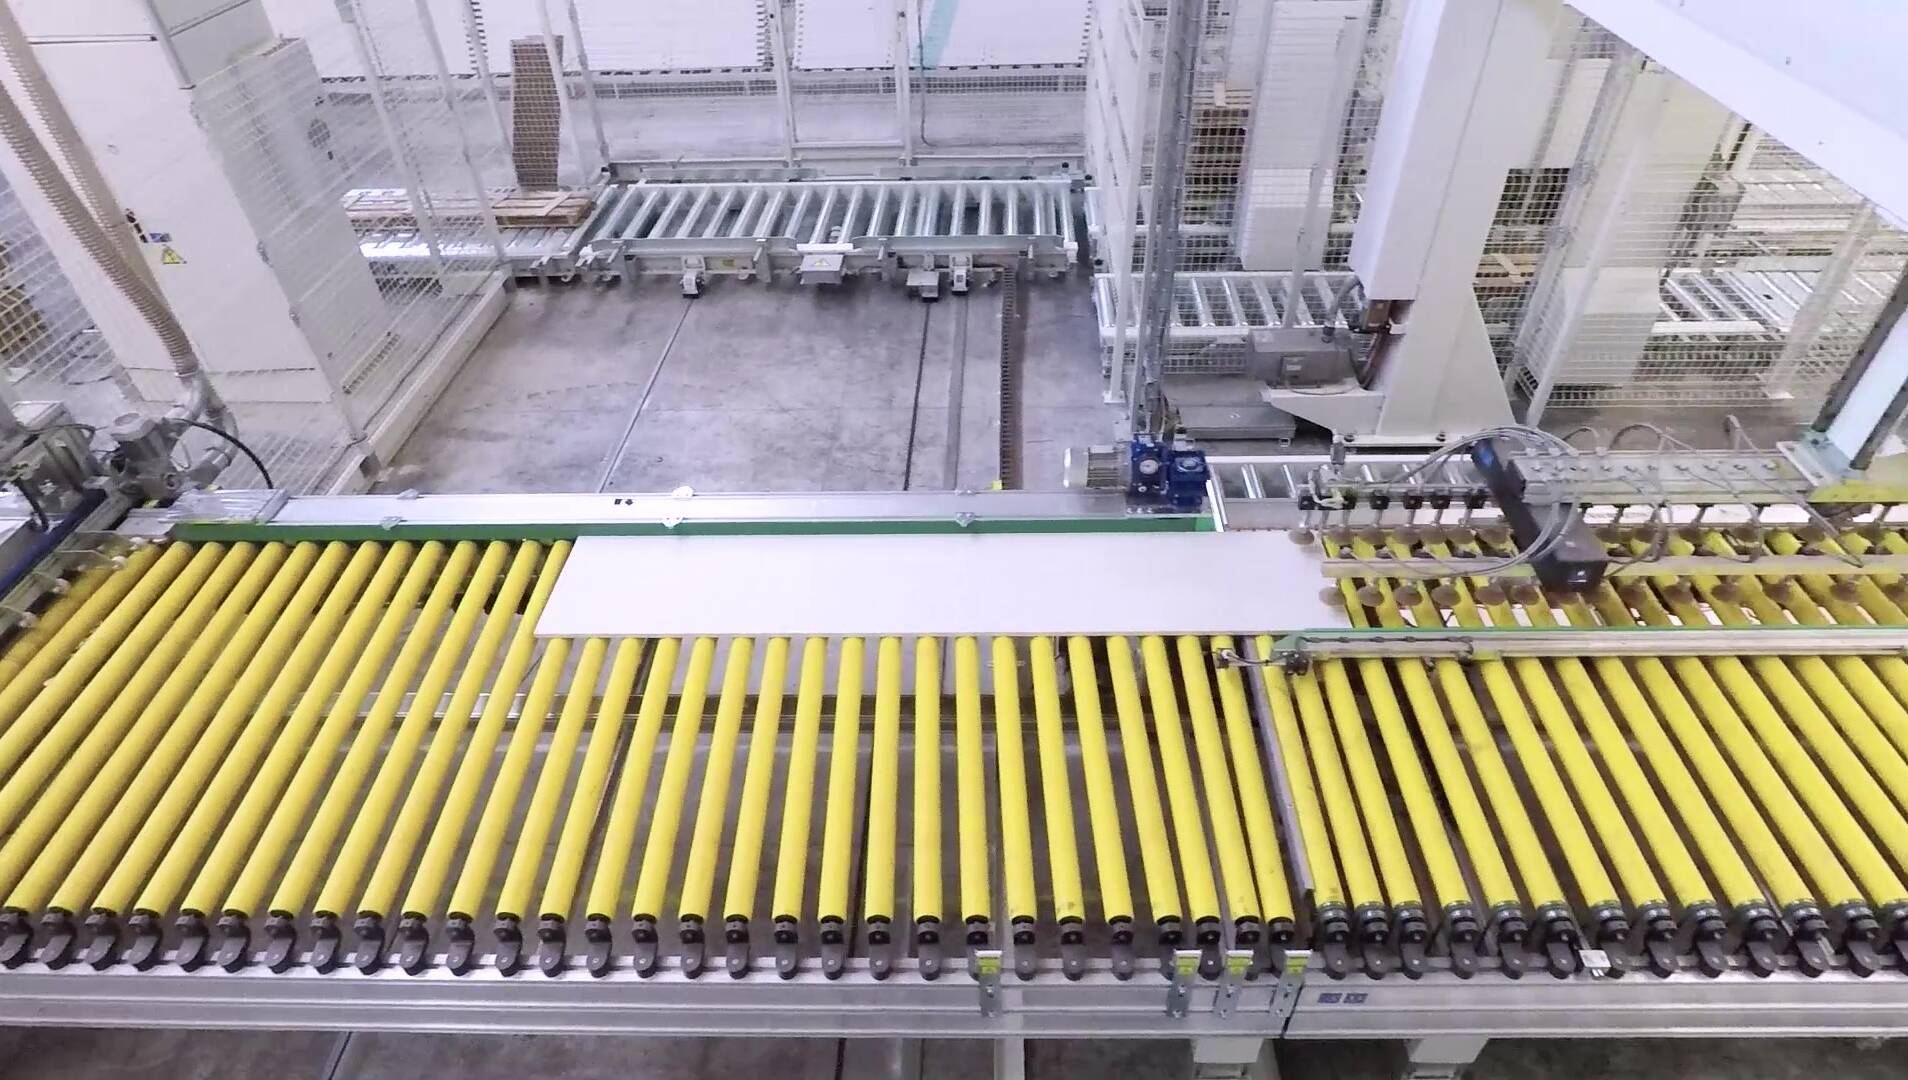 Movimentação e Automação - Sistemas de Movimentação - mahros conveyors